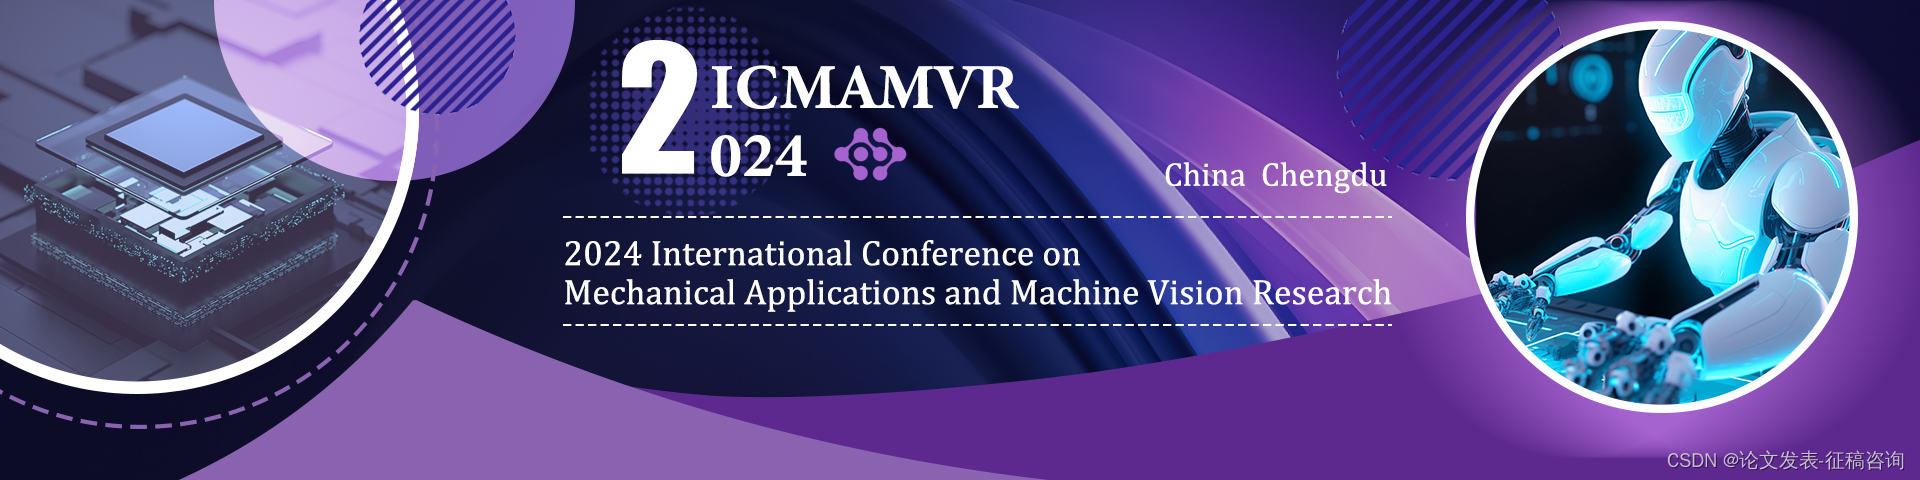 ✅稳定检索，高校嘉宾出席，2024年机械应用与机器视觉研究国际会议(ICMAMVR 2024)